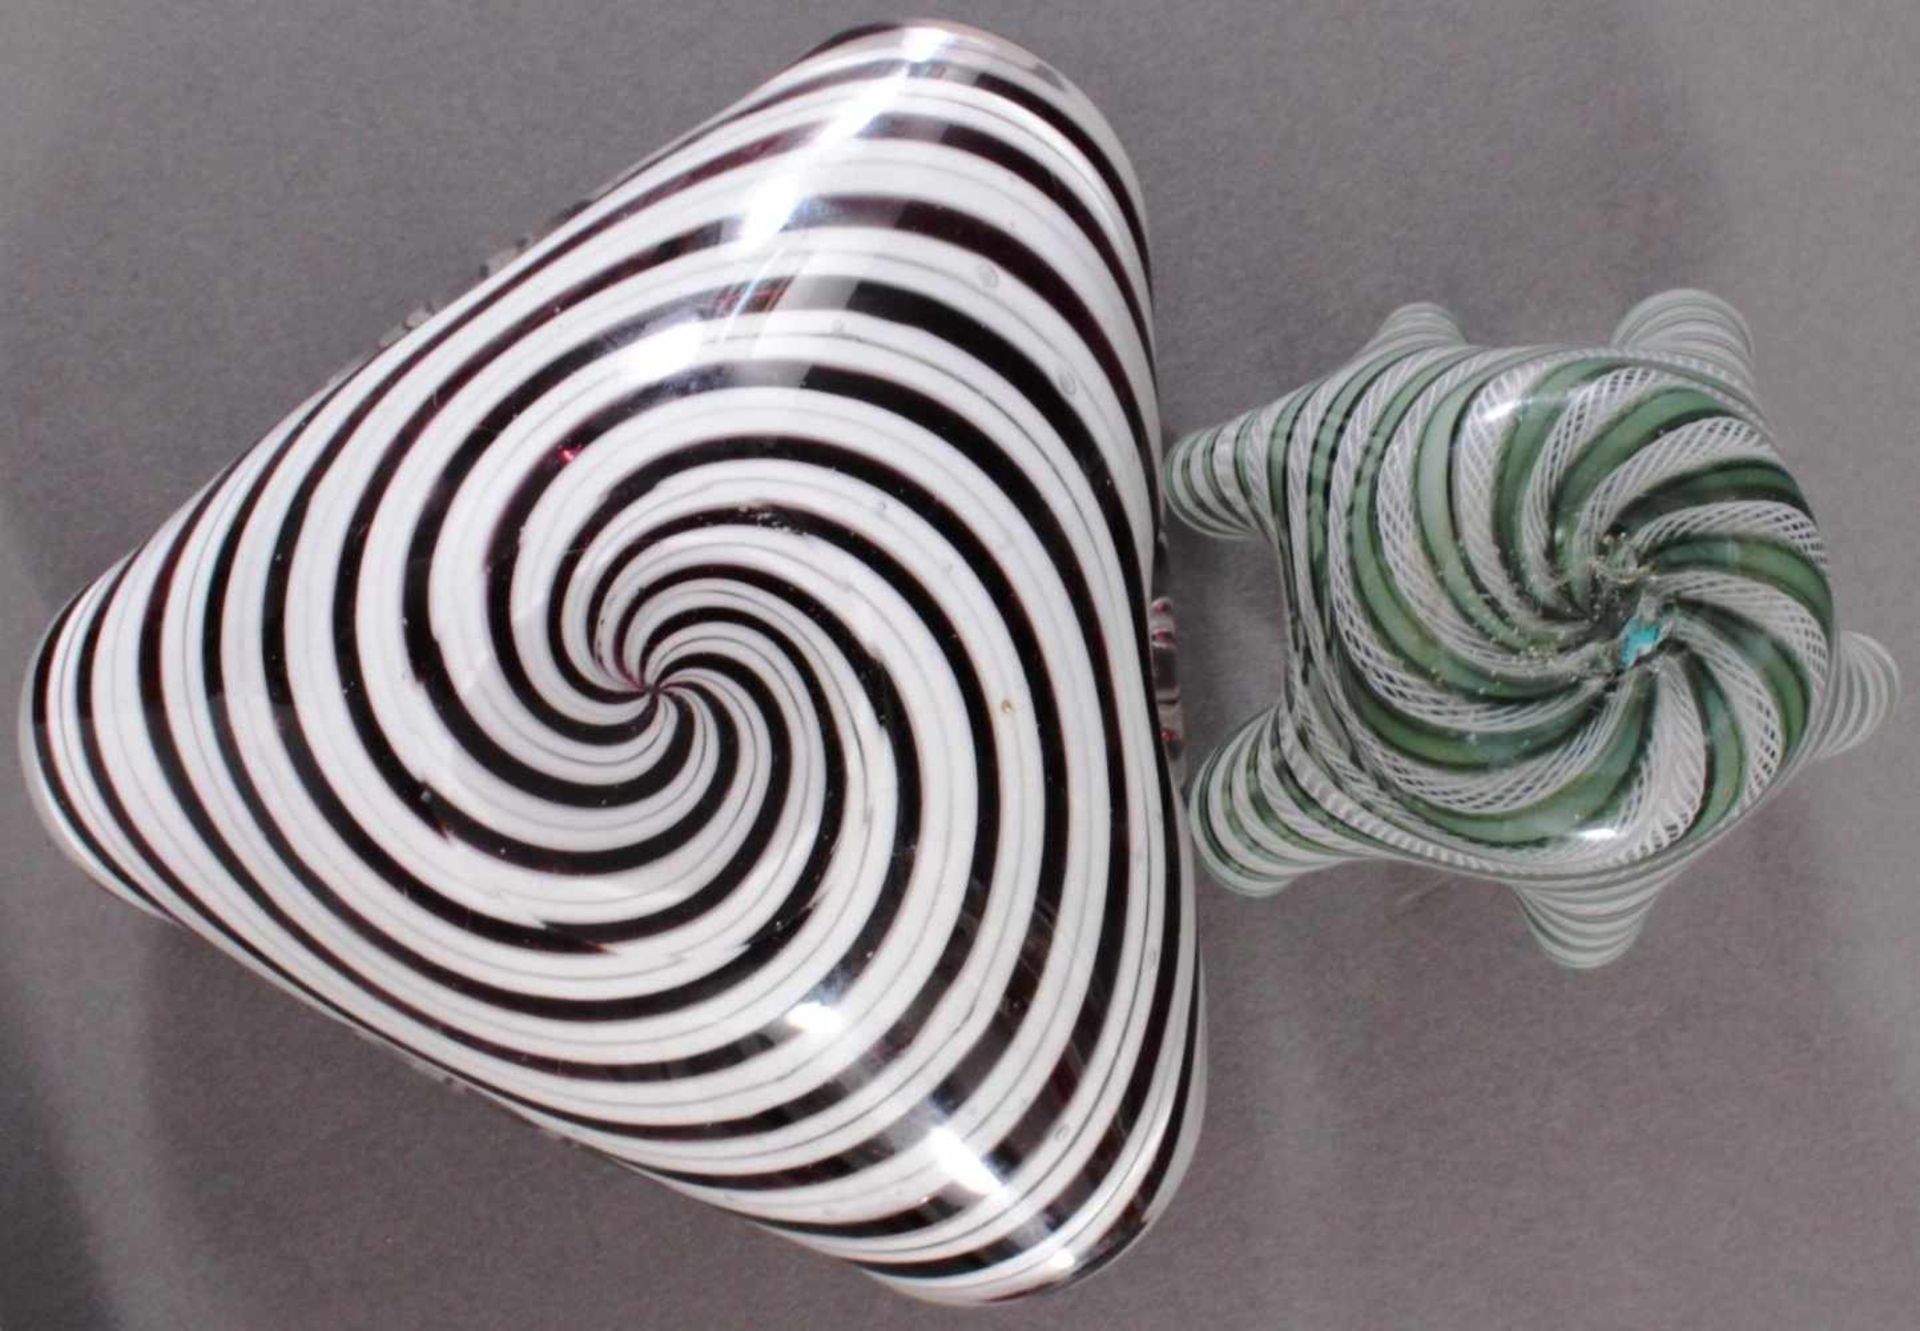 2 Murano GlasschalenFarbloses Glas mit eingeschmolzenen bunten Stäben. Eine im Venini-Stil, eine mit - Bild 3 aus 4